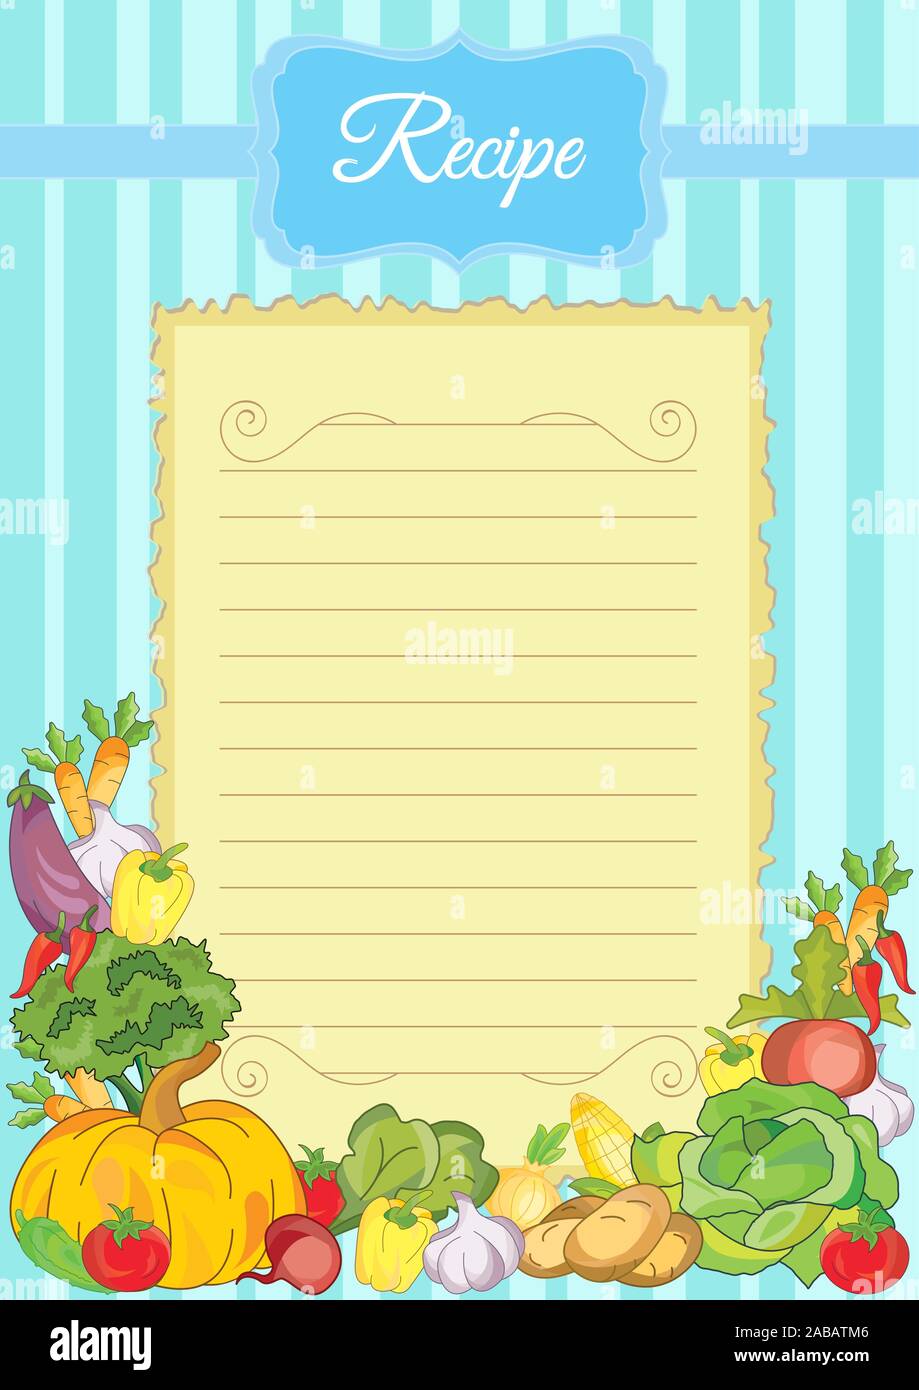 Beachten Sie Papier mit Gemüse. Papier für Rezepte. Formular für Rezepte. Schönes Papier für Küche Datensätze Stock Vektor